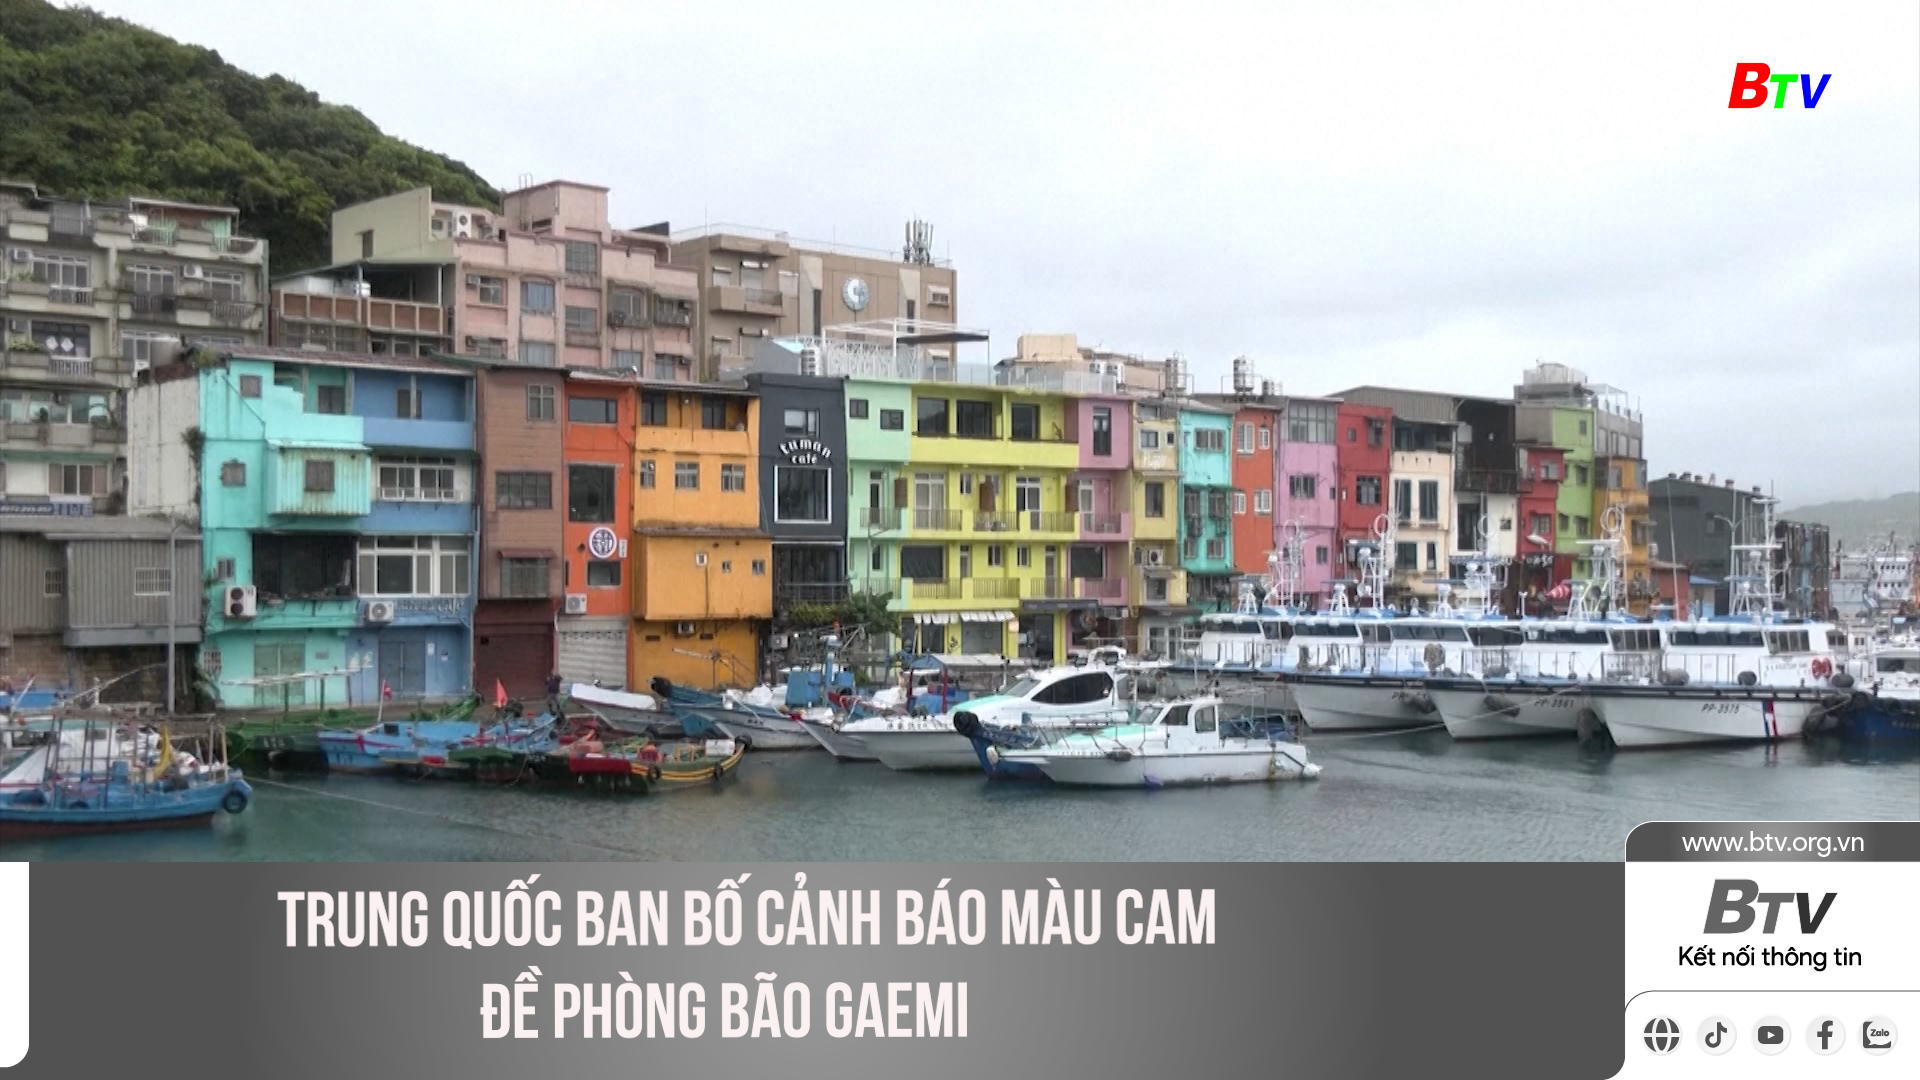 Trung Quốc ban bố cảnh báo màu cam đề phòng bão Gaemi